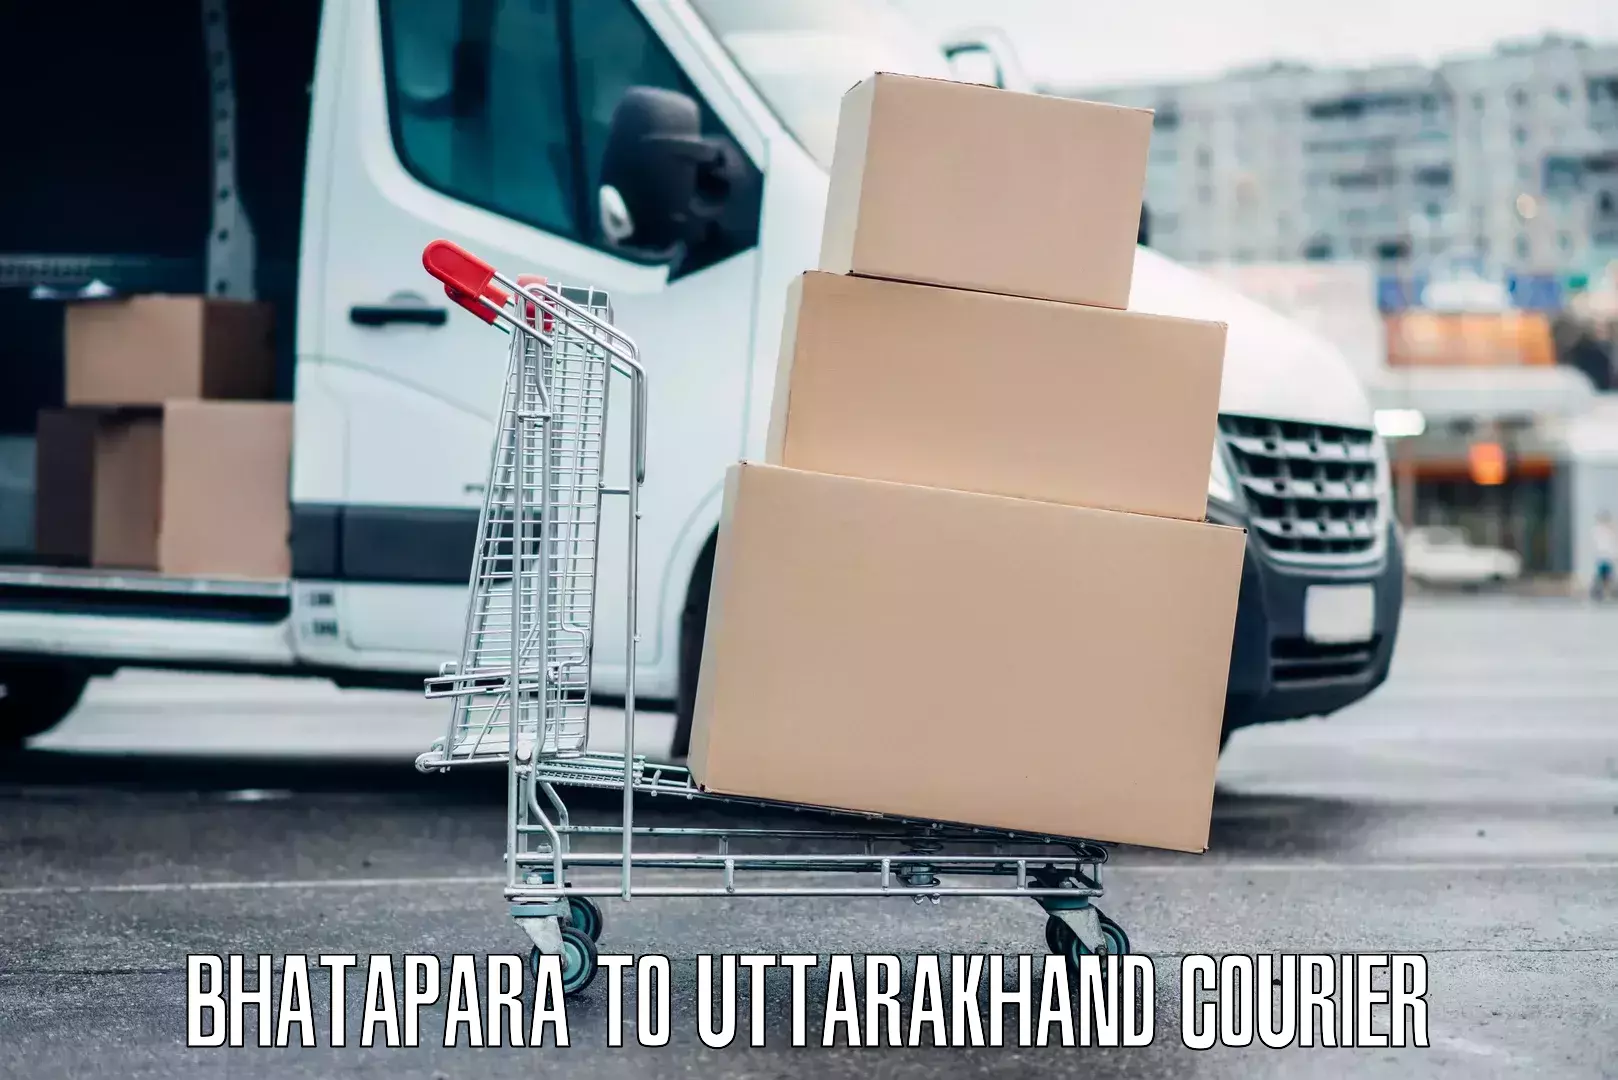 Luggage transport service Bhatapara to Uttarakhand